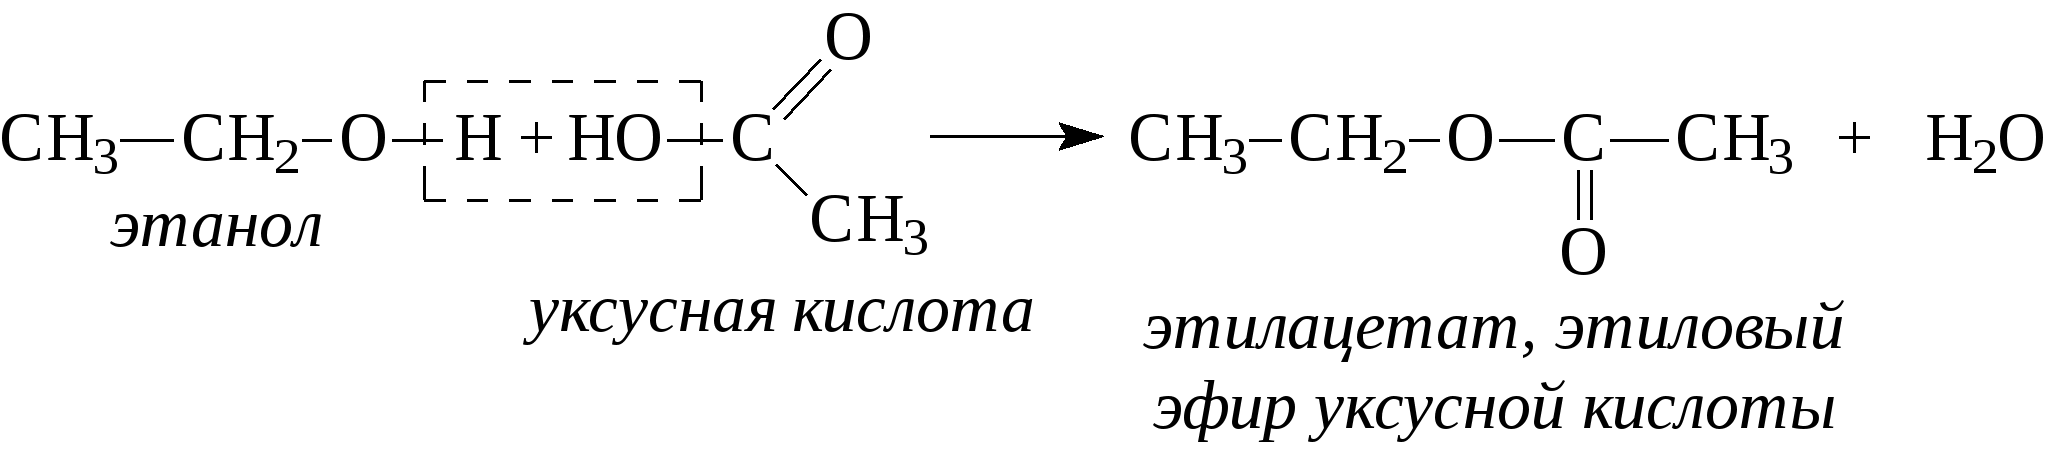 Этилацетат можно получить реакцией. Этилацетат из уксусной кислоты. Как из этанола получить этиловый эфир уксусной кислоты. Синтез этилацетата из уксусной кислоты. Уксусная кислота этиловый эфир уксусной кислоты реакция.